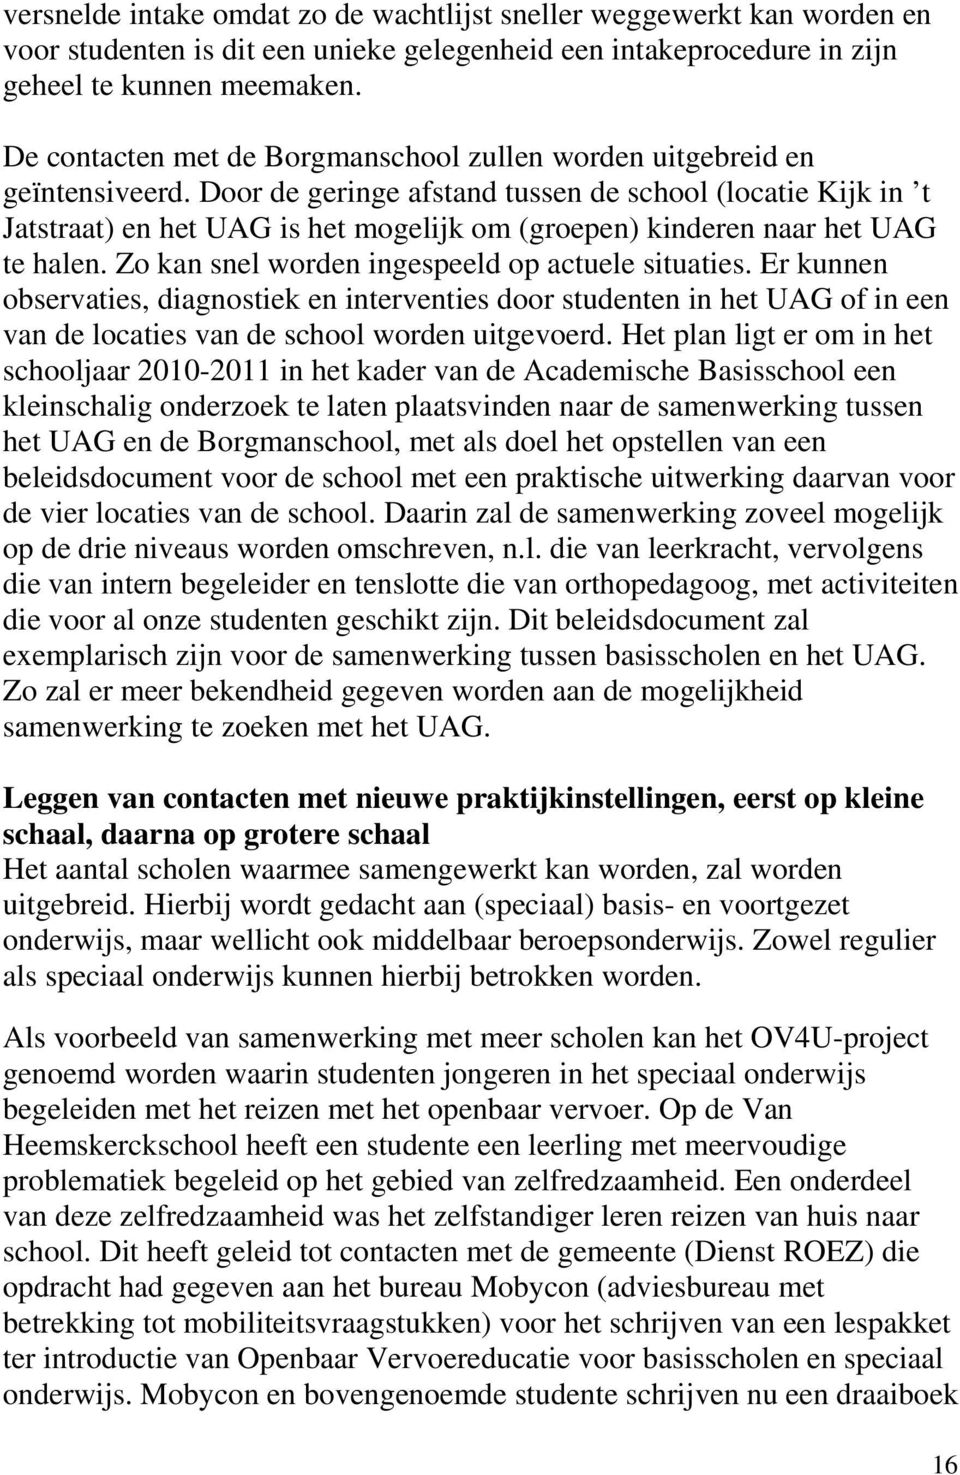 Door de geringe afstand tussen de school (locatie Kijk in t Jatstraat) en het UAG is het mogelijk om (groepen) kinderen naar het UAG te halen. Zo kan snel worden ingespeeld op actuele situaties.